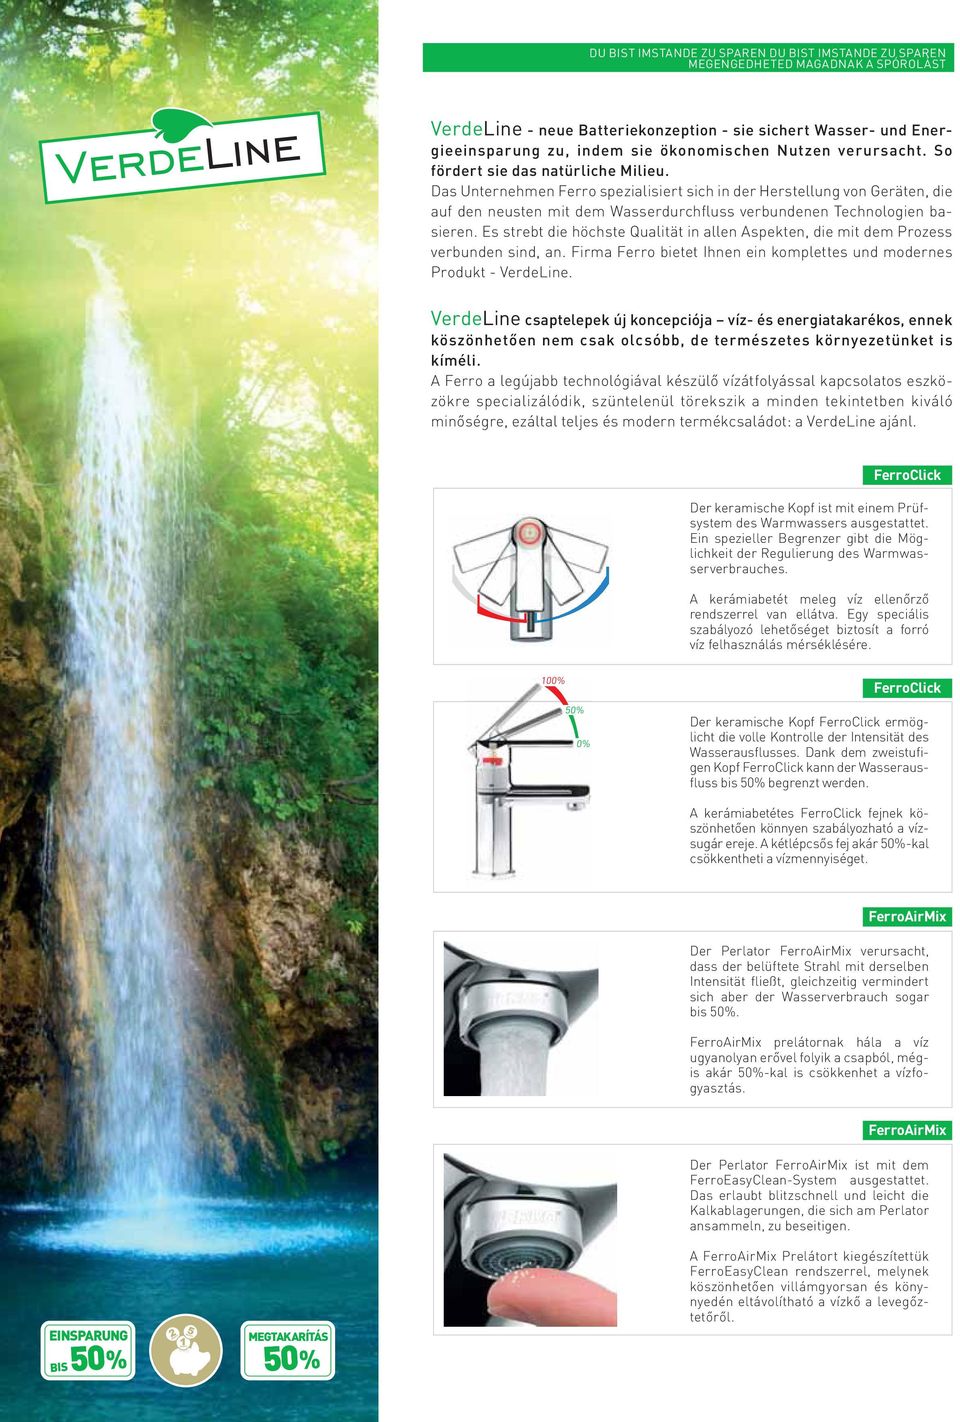 Das Unternehmen Ferro spezialisiert sich in der Herstellung von Geräten, die auf den neusten mit dem Wasserdurchfluss verbundenen Technologien basieren.